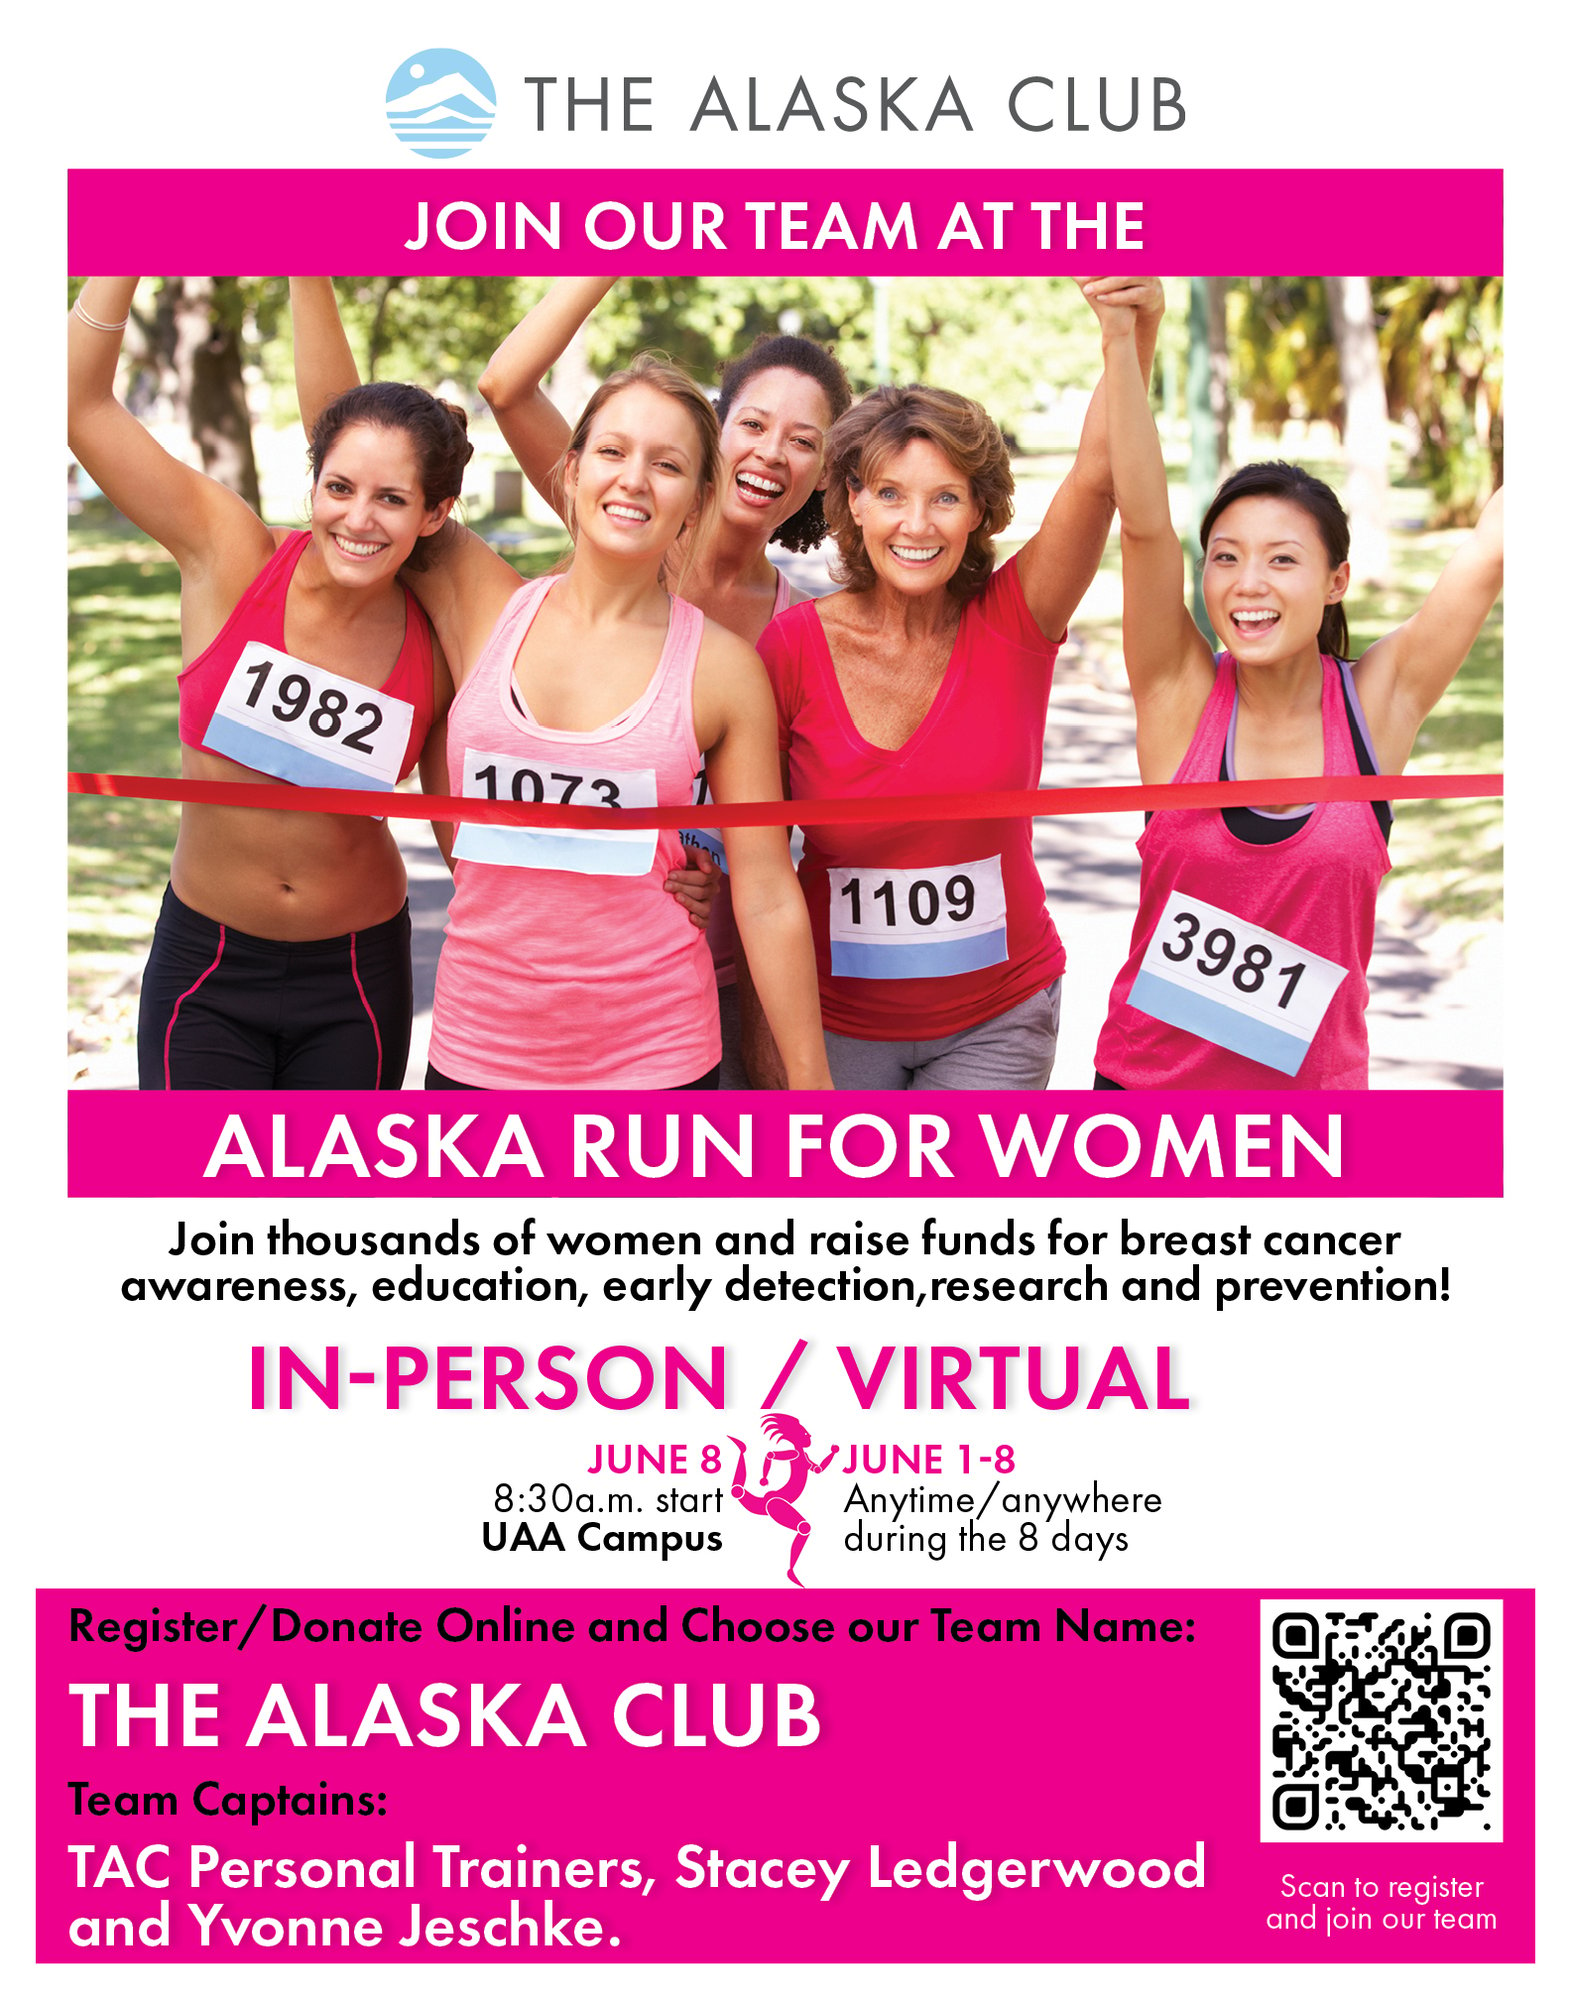 Card #5878 AK Run for Women Team Sign Up